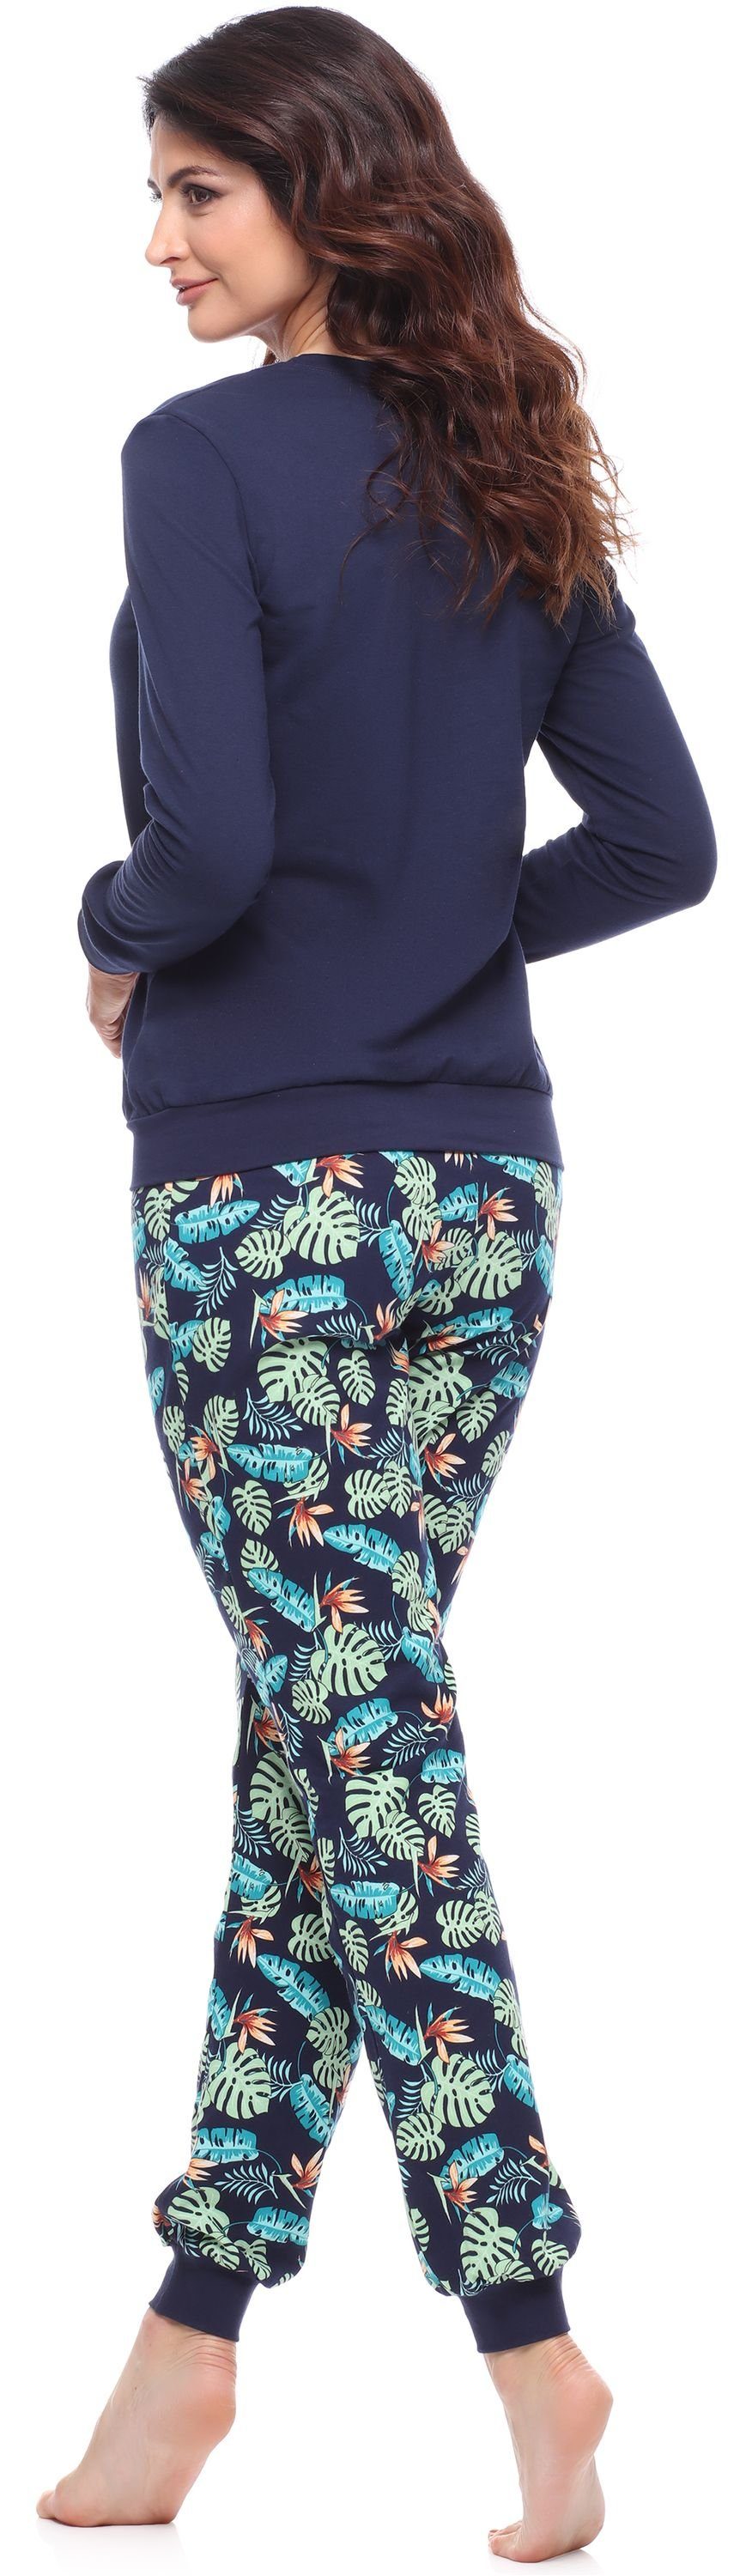 Zweiteiler Schlafanzug Pyjama mit Damen lang bunt Merry Muster Style Schlafanzug MS10-268 Marineblau/Blätter